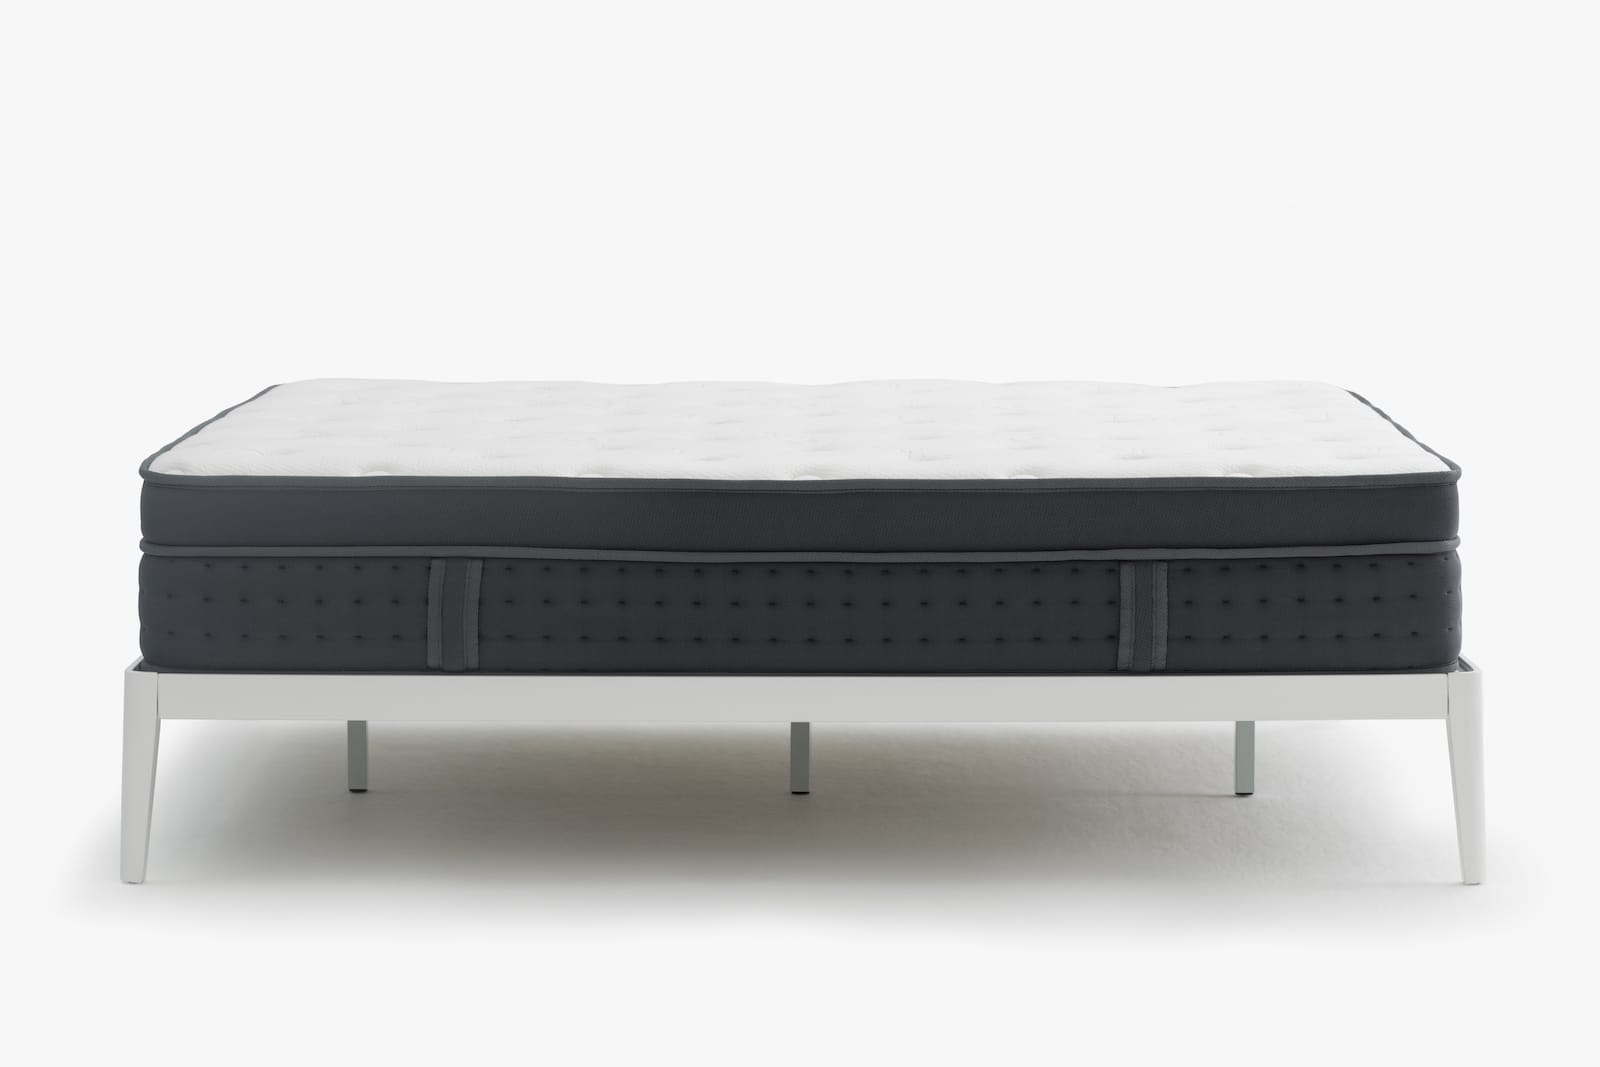 Noa luxe mattress